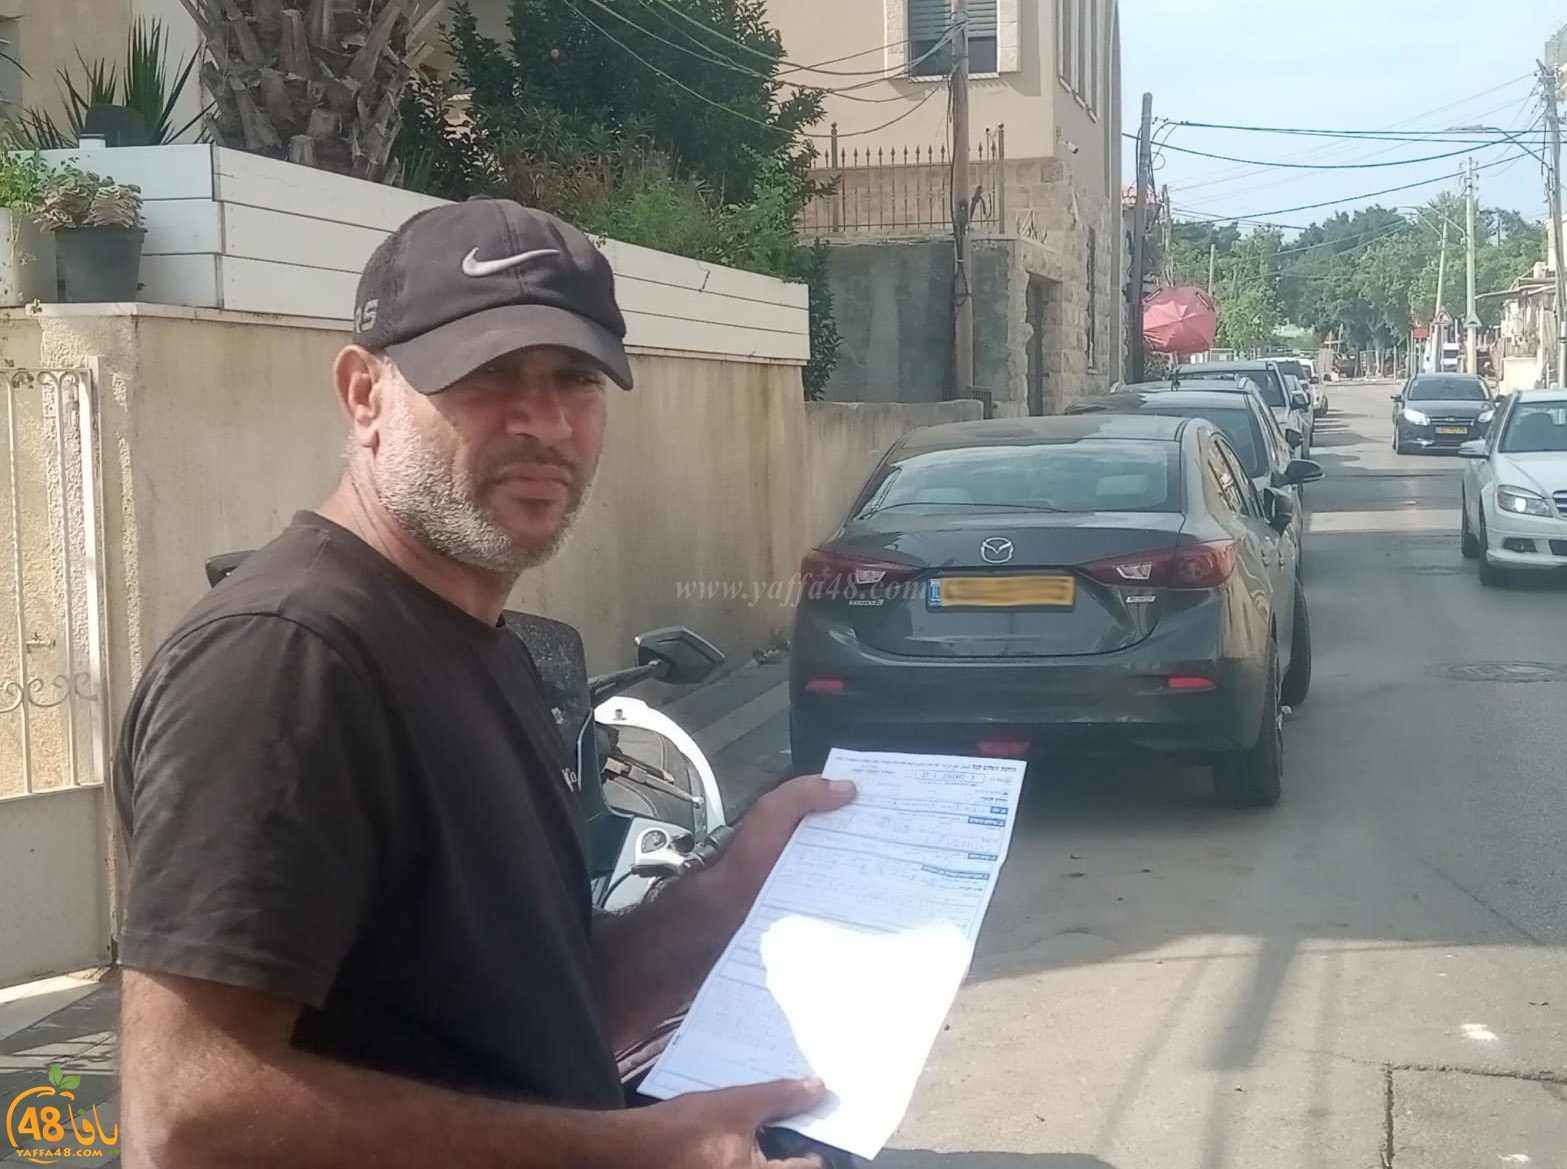   فيديو: مواطن من يافا شرطي اسقطني عن الدراجة الكهربائية وحرر مخالفة ضدي